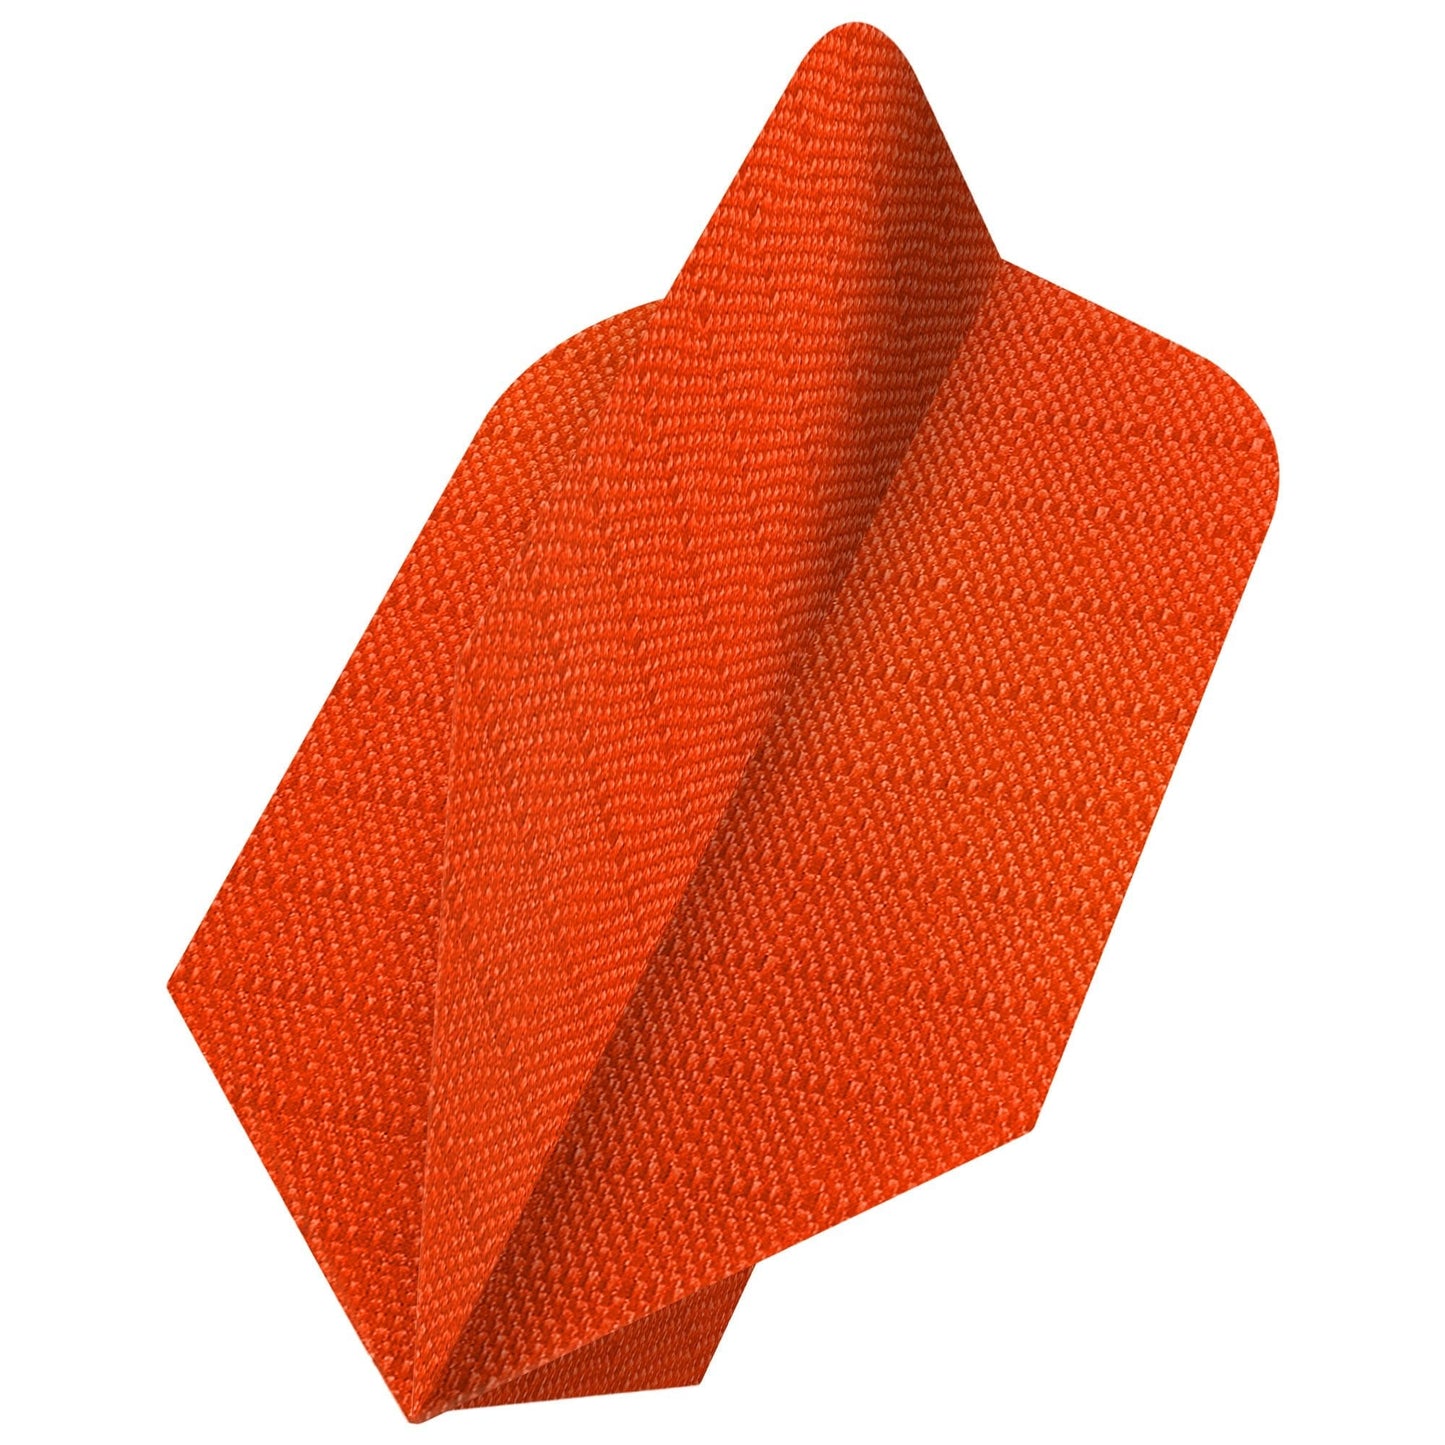 *Designa Dart Flights - Fabric Rip Stop Nylon - Longlife - Slim